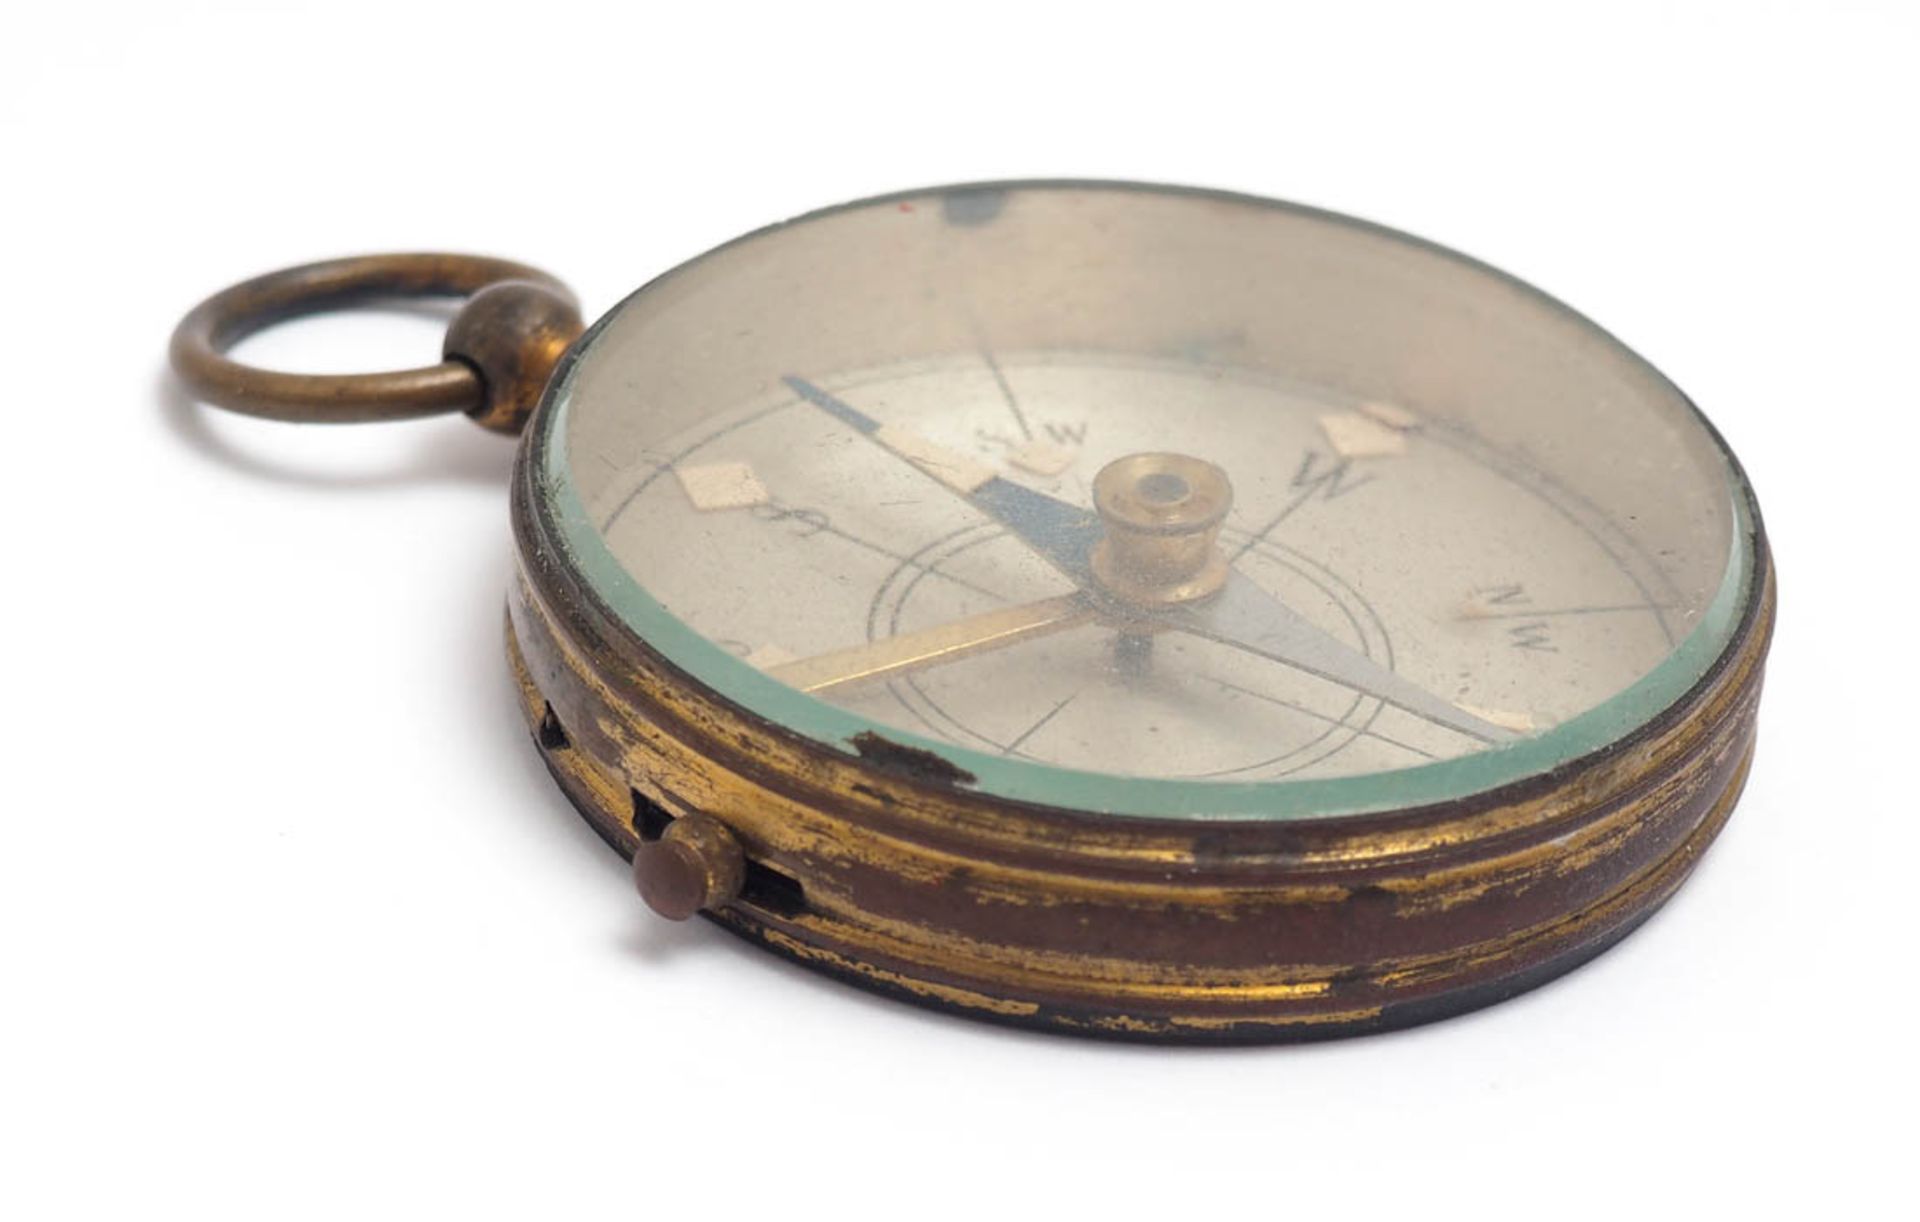 Kompass 19.Jhdt. Messinggehäuse, mit Nadelfeststeller und Ringhandhabe. Durchm.4,5cm. - Bild 2 aus 2